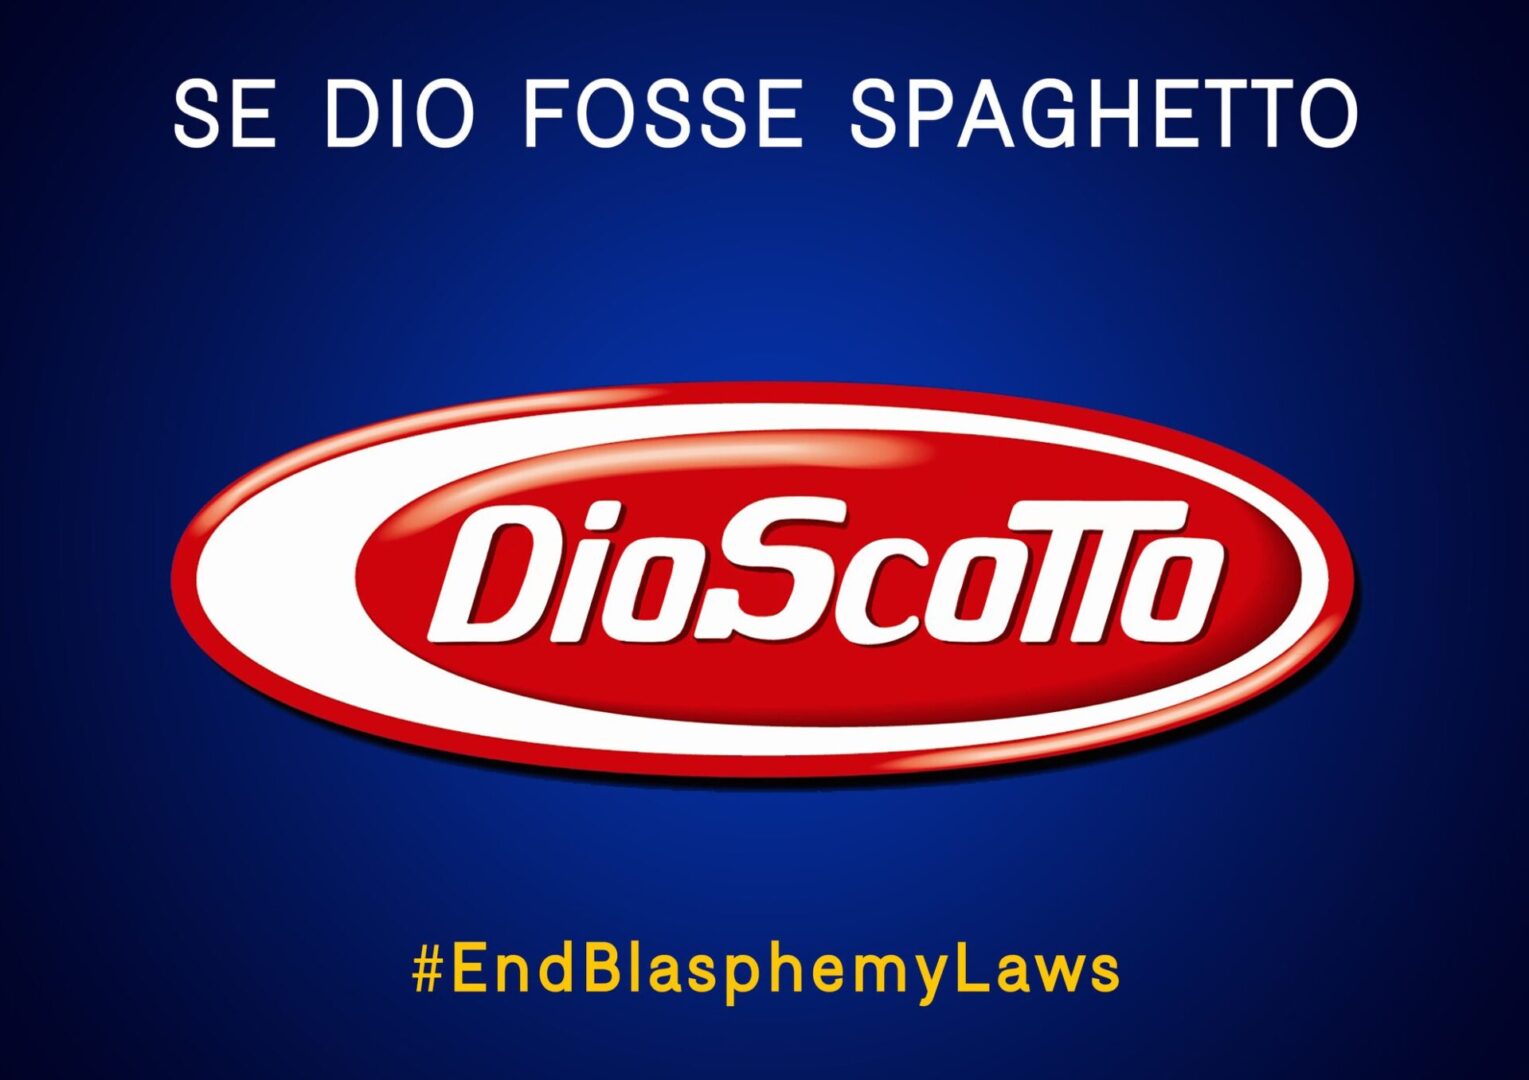 Ottopagine.it : Dioscotto, per dire no al reato di blasfemia